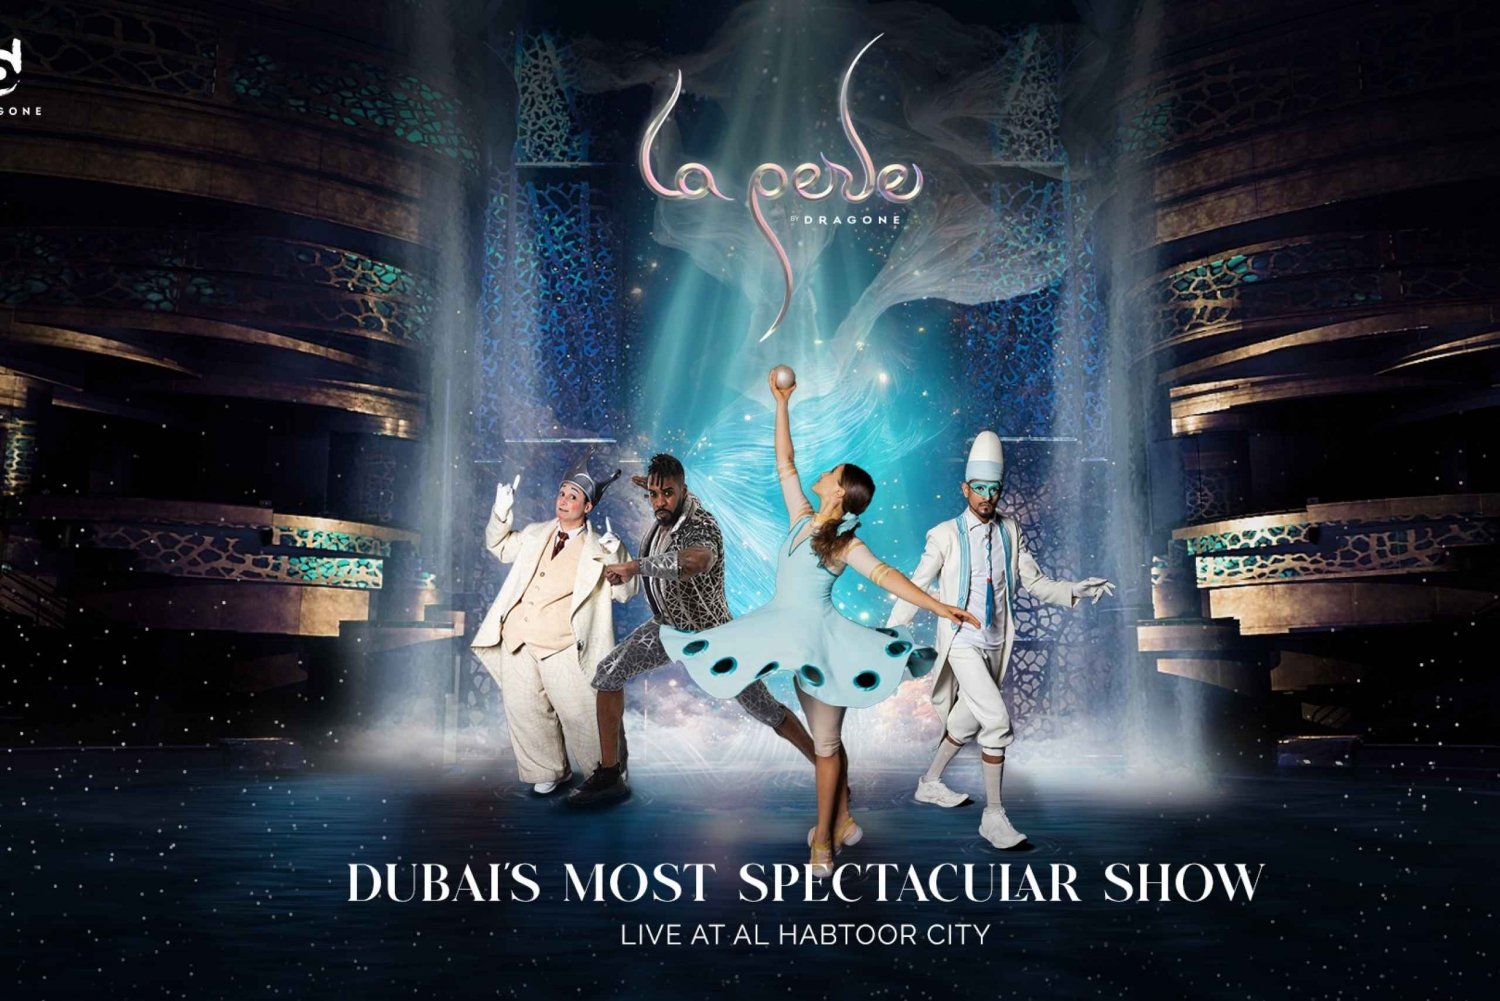 Dubai: ingressos para o show La Perle by Dragone